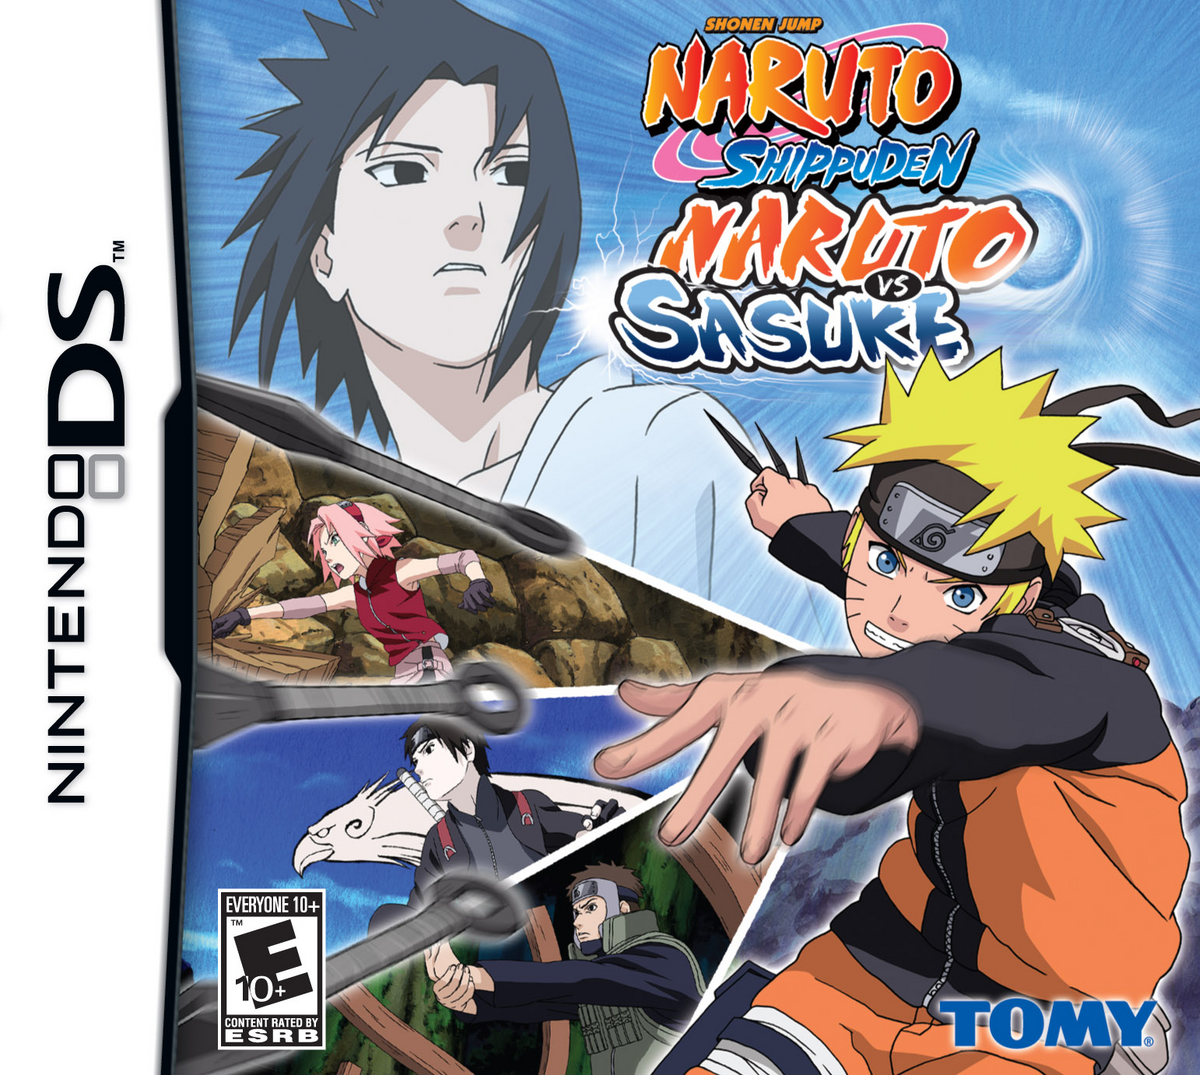 Naruto vs Sasuke Dublado - Naruto Shippuden Dublado - Bilibili